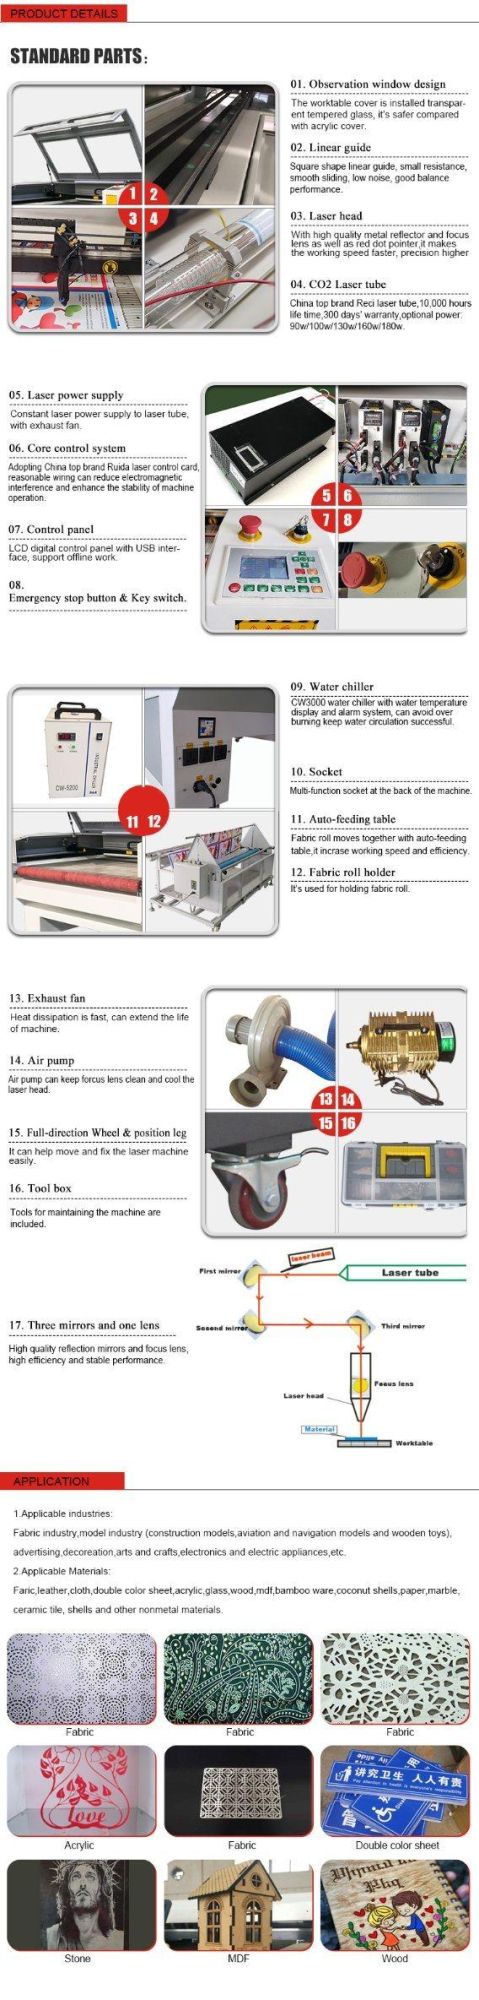 Sofa Garments Fabric Cloth Roll Feeding Table CNC 1610 Laser Cutter with Auto Feeder